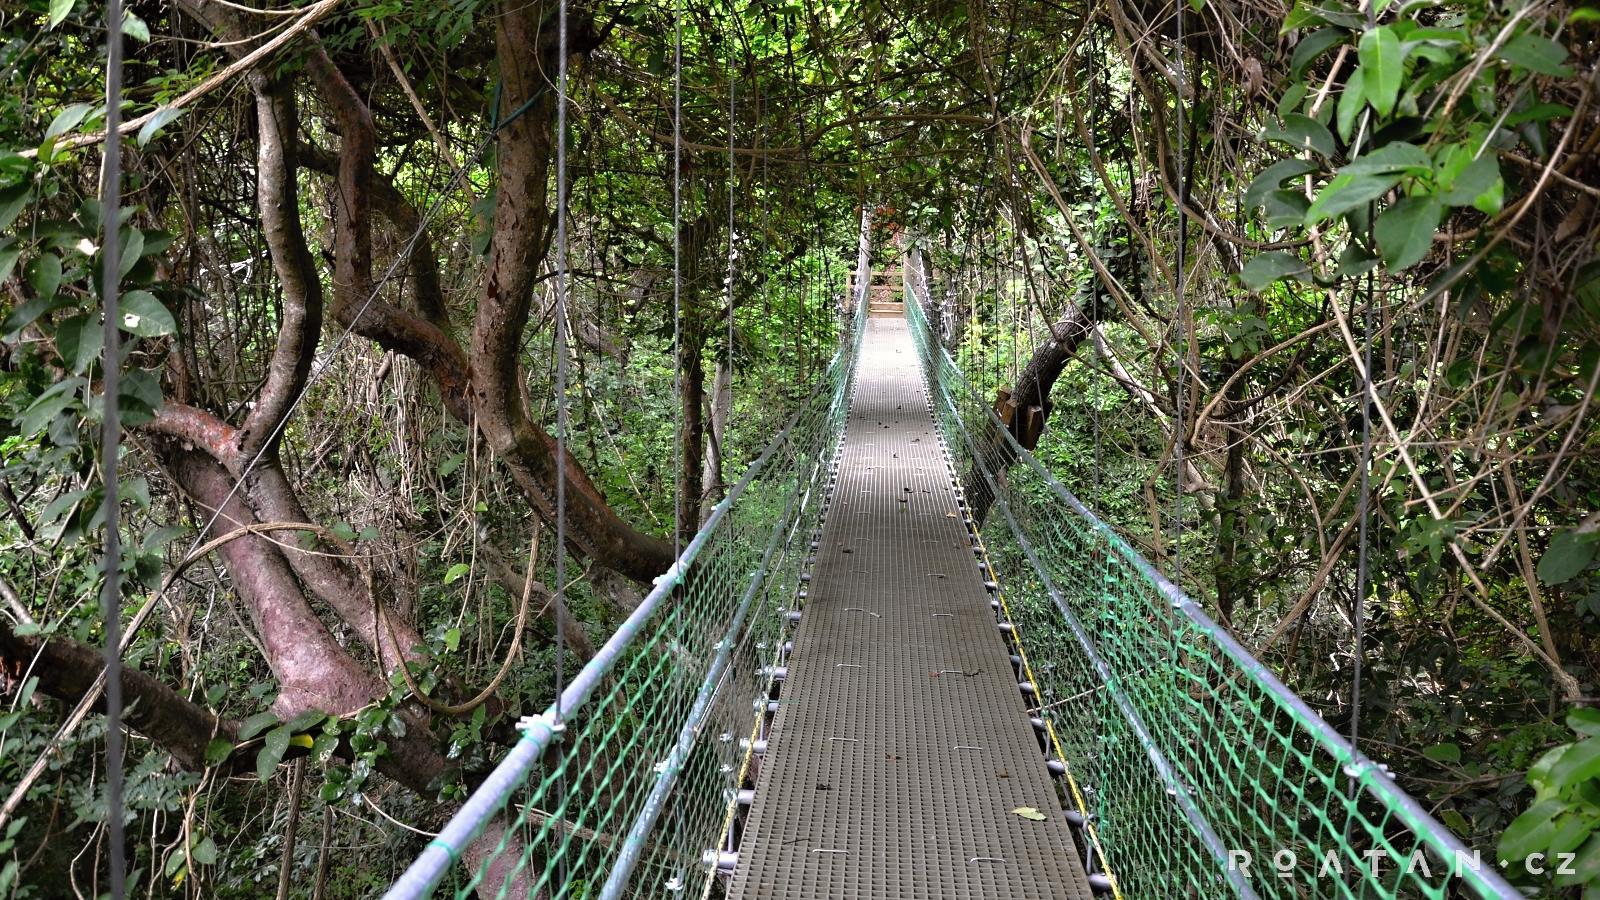 Mosty v džungli